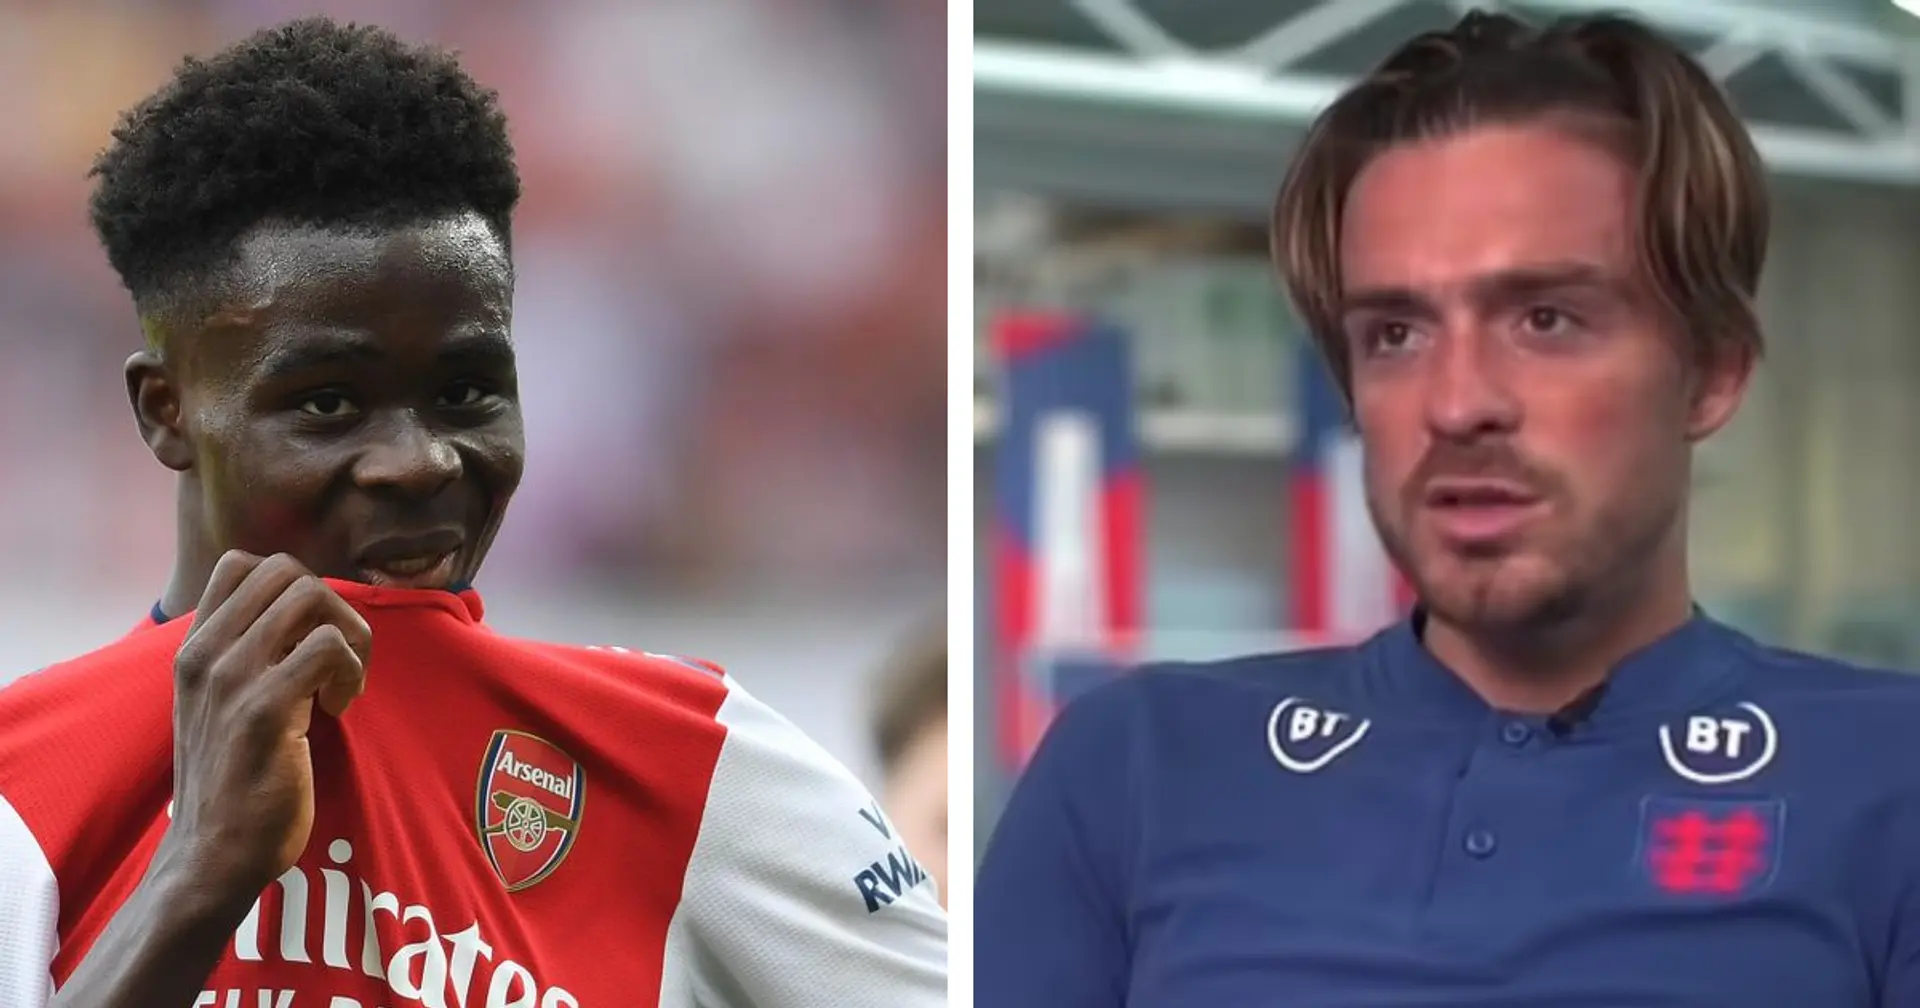 Not Saka — Jack Grealish names 'frightening' Arsenal player in training